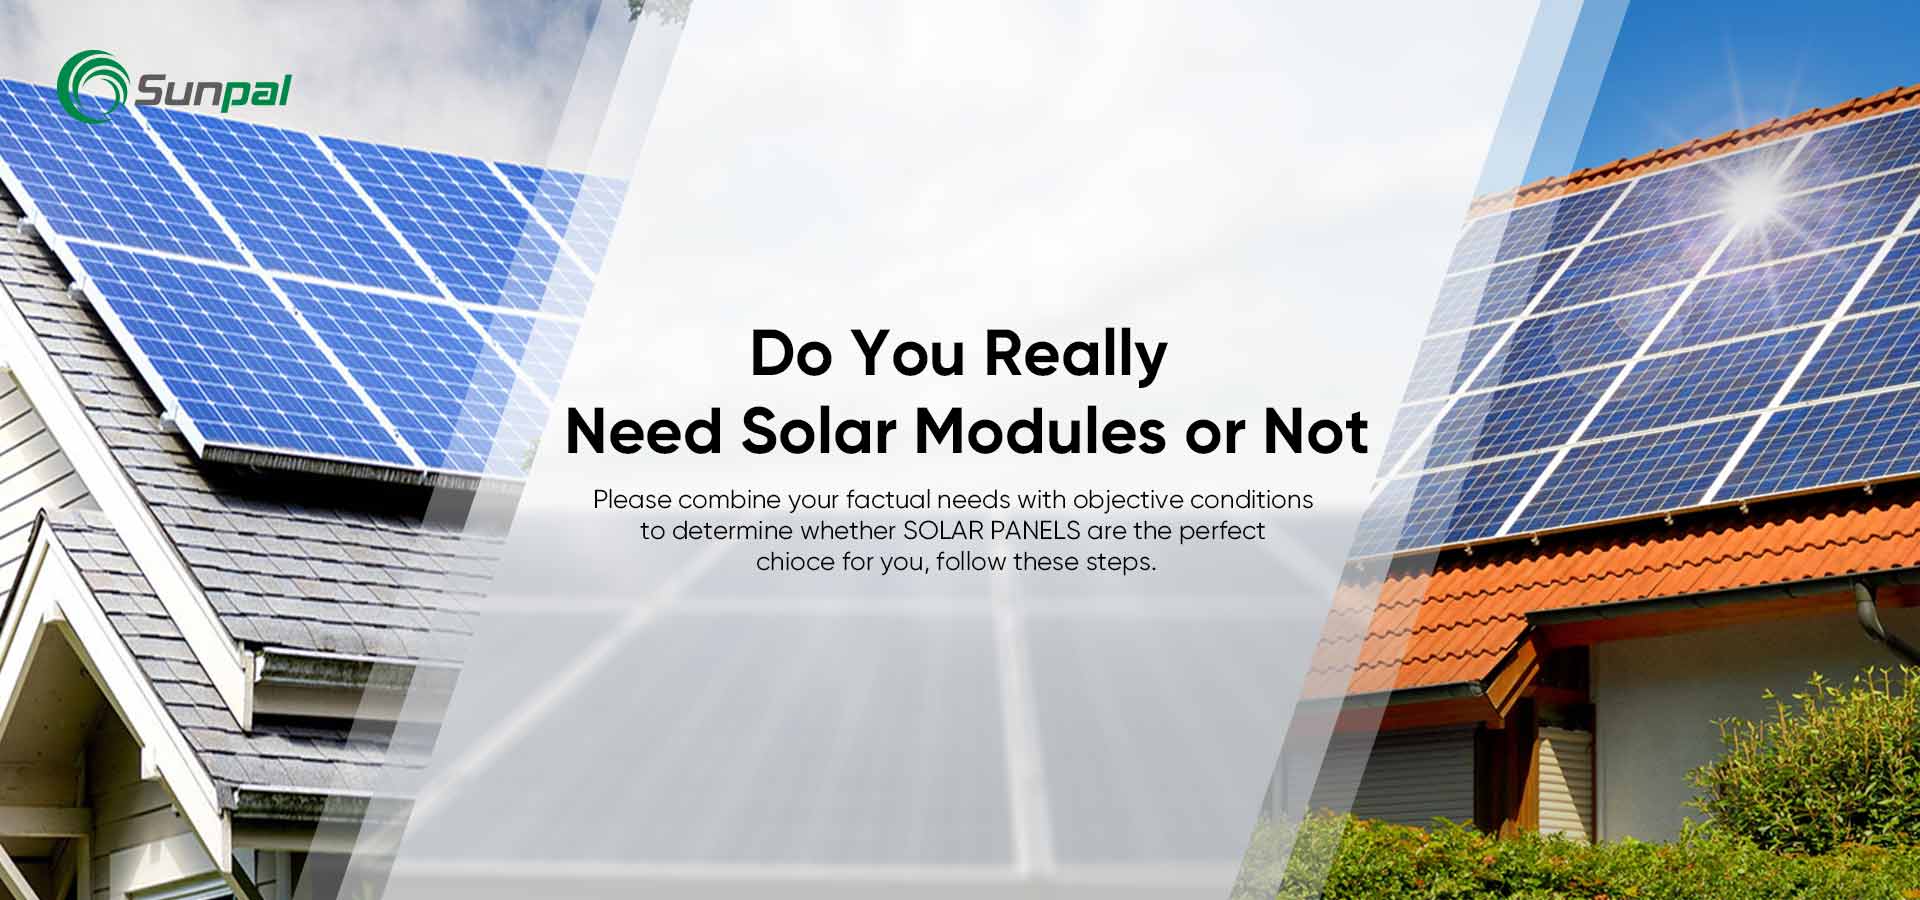 ¿Son los paneles solares adecuados para usted? 8 señales de que deberías optar por la energía solar